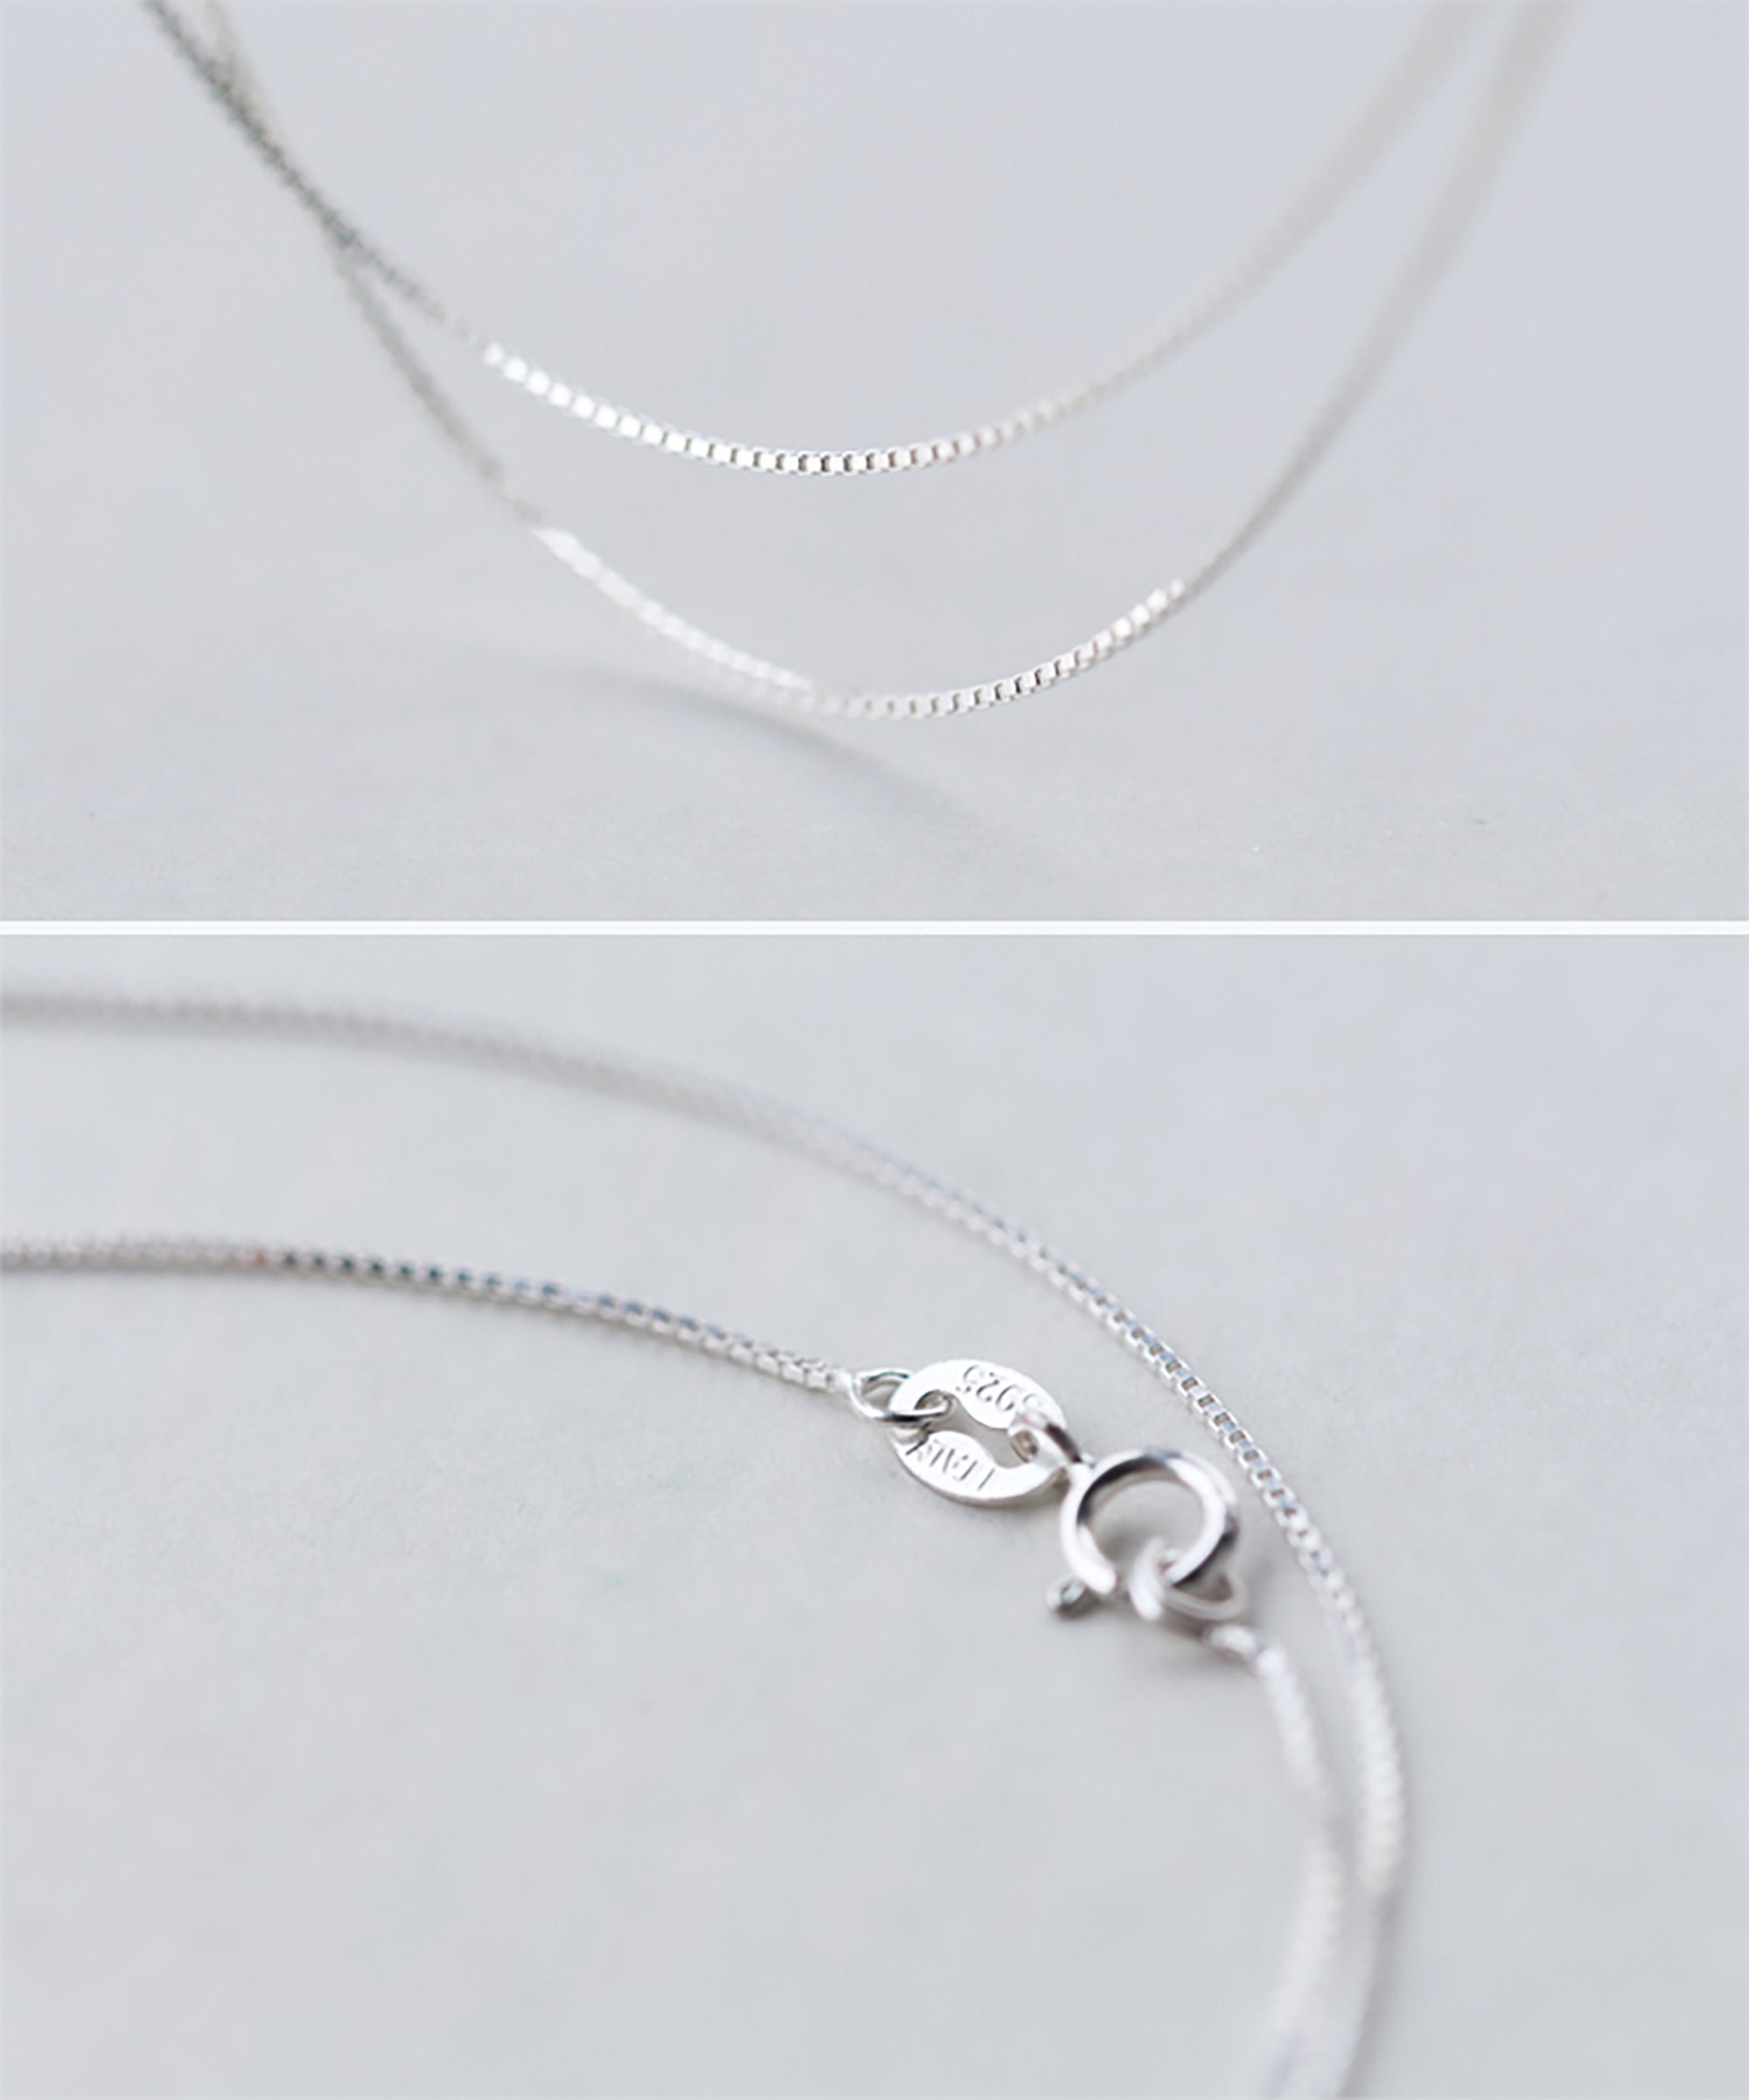 Korean Crystal Teardrop Charm Necklace 925 Silver Adjustable | Etsy